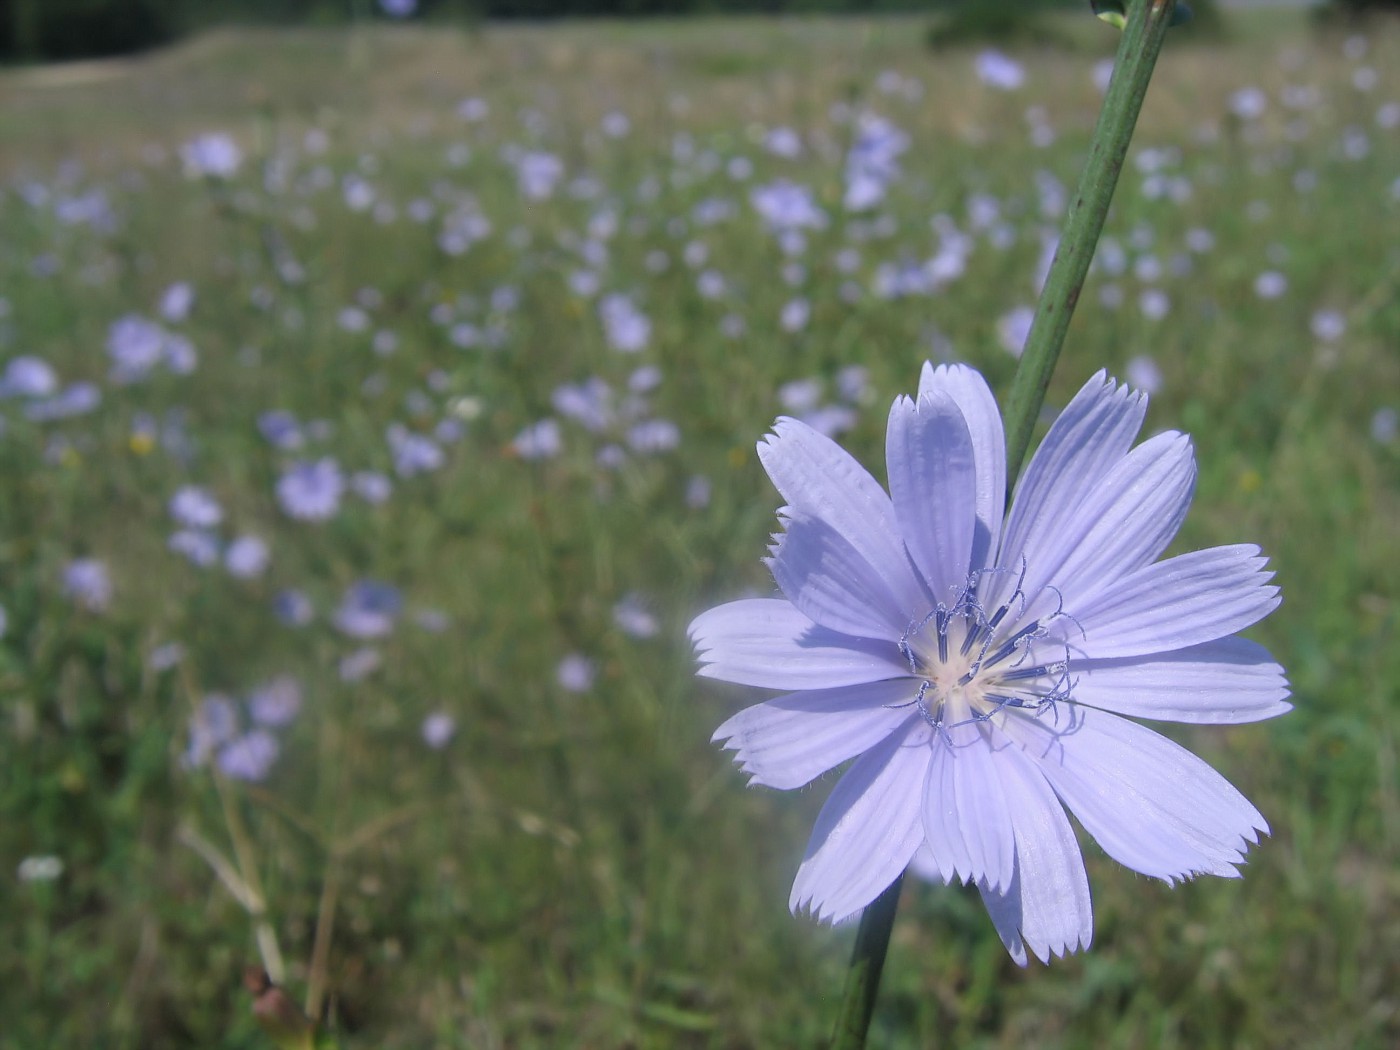 Flower in a Field